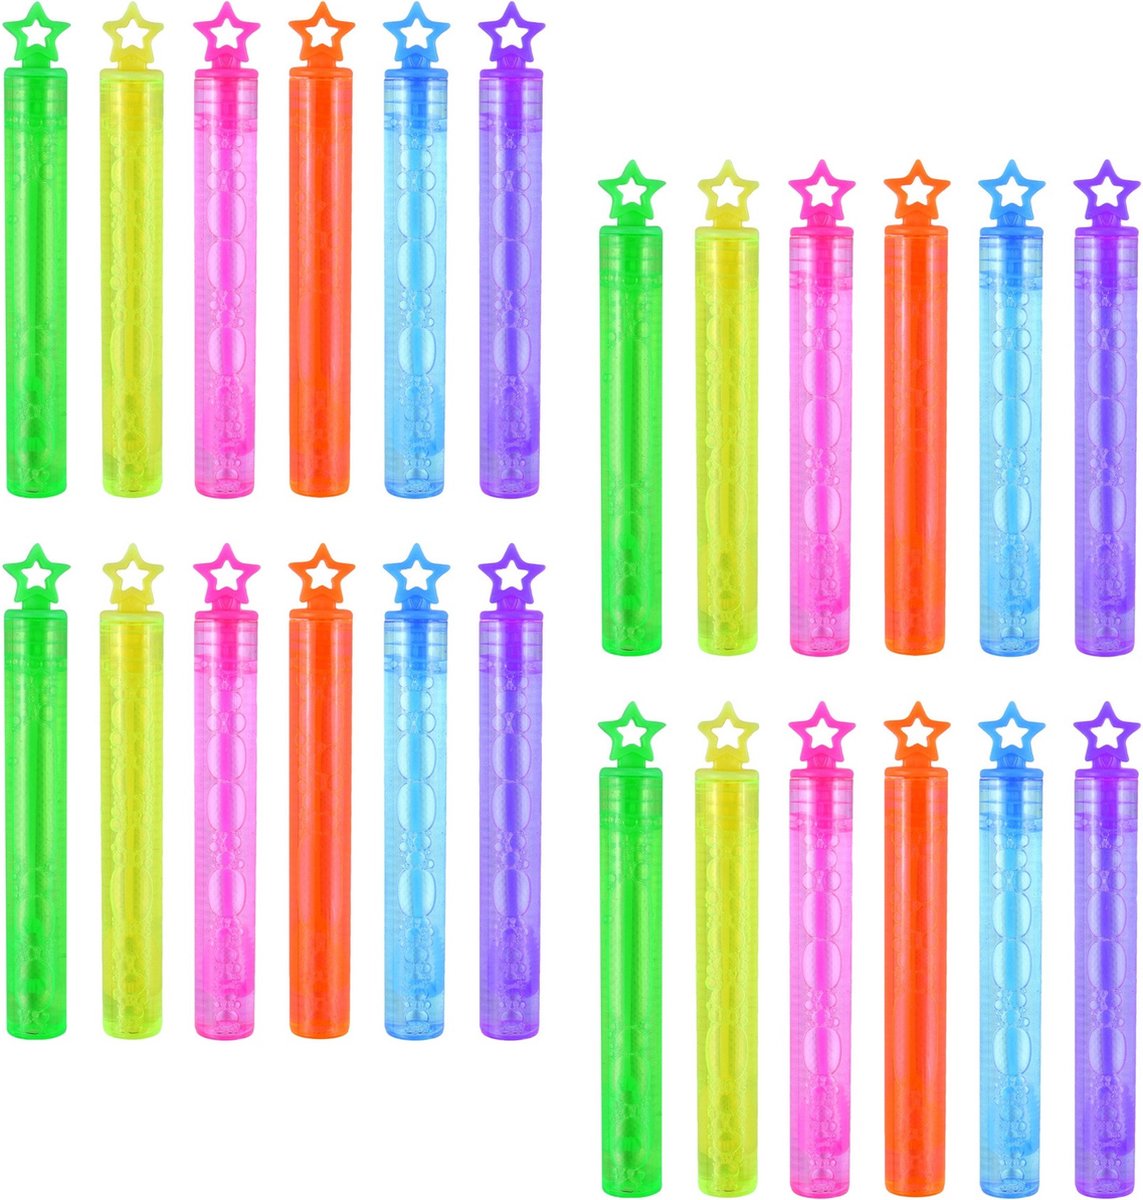 36x Bellenblaas buisjes neon kleuren met ster dop 4 ml voor kinderen - Uitdeelspeelgoed - Grabbelton speelgoed